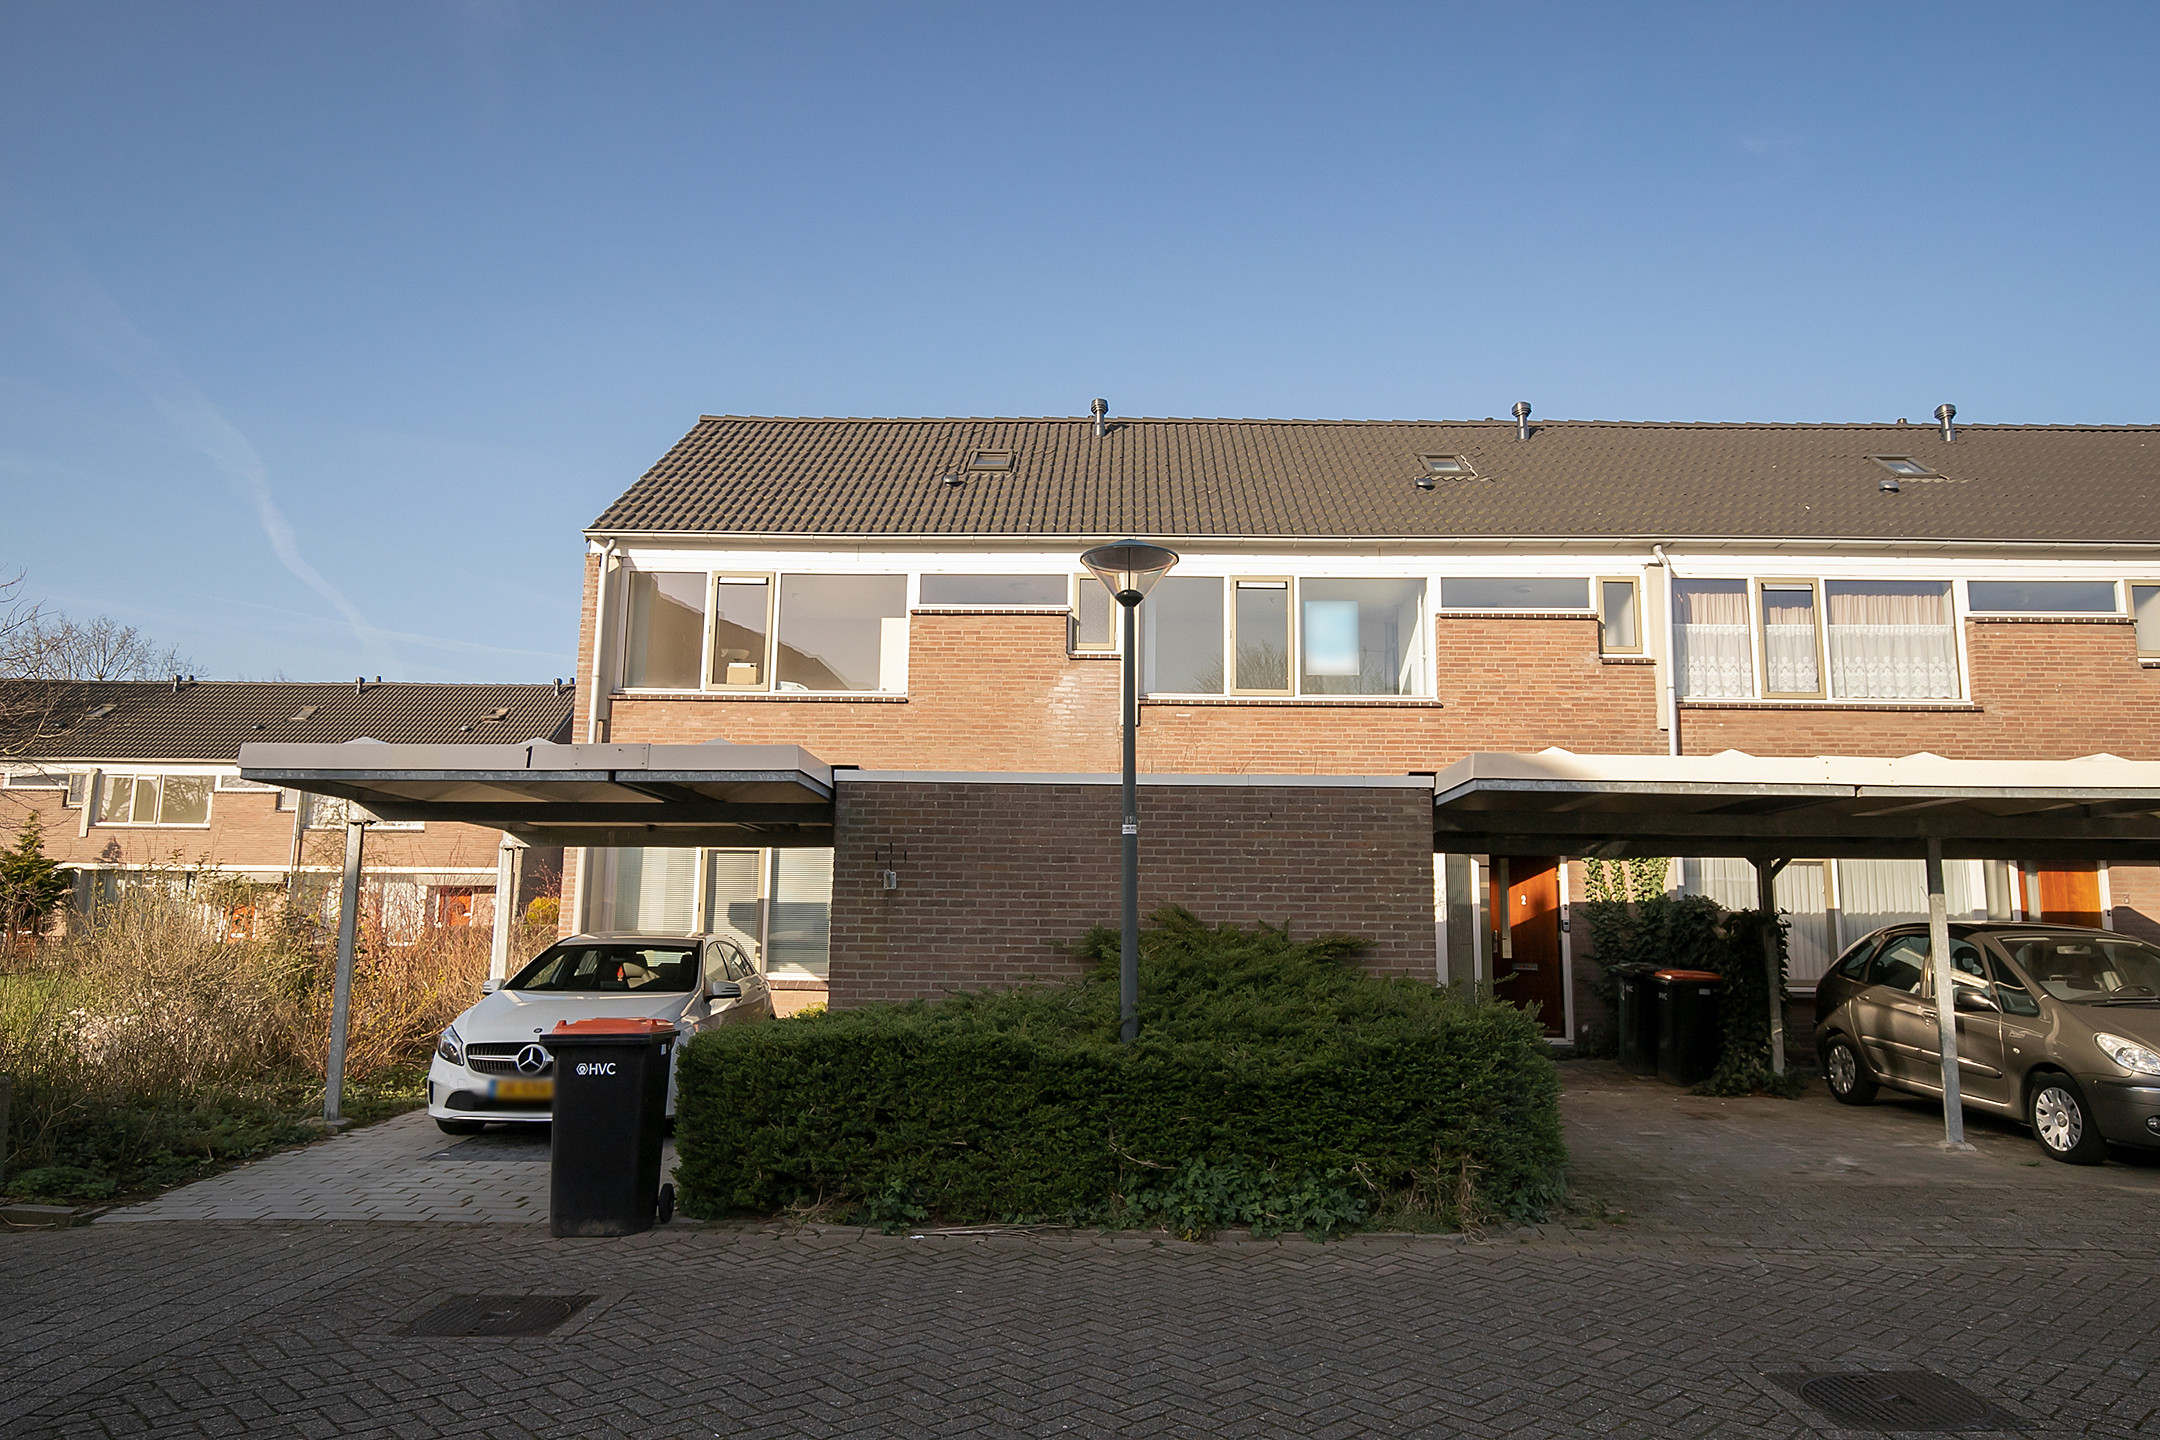 Bekijk foto 1/1 van house in Hoorn